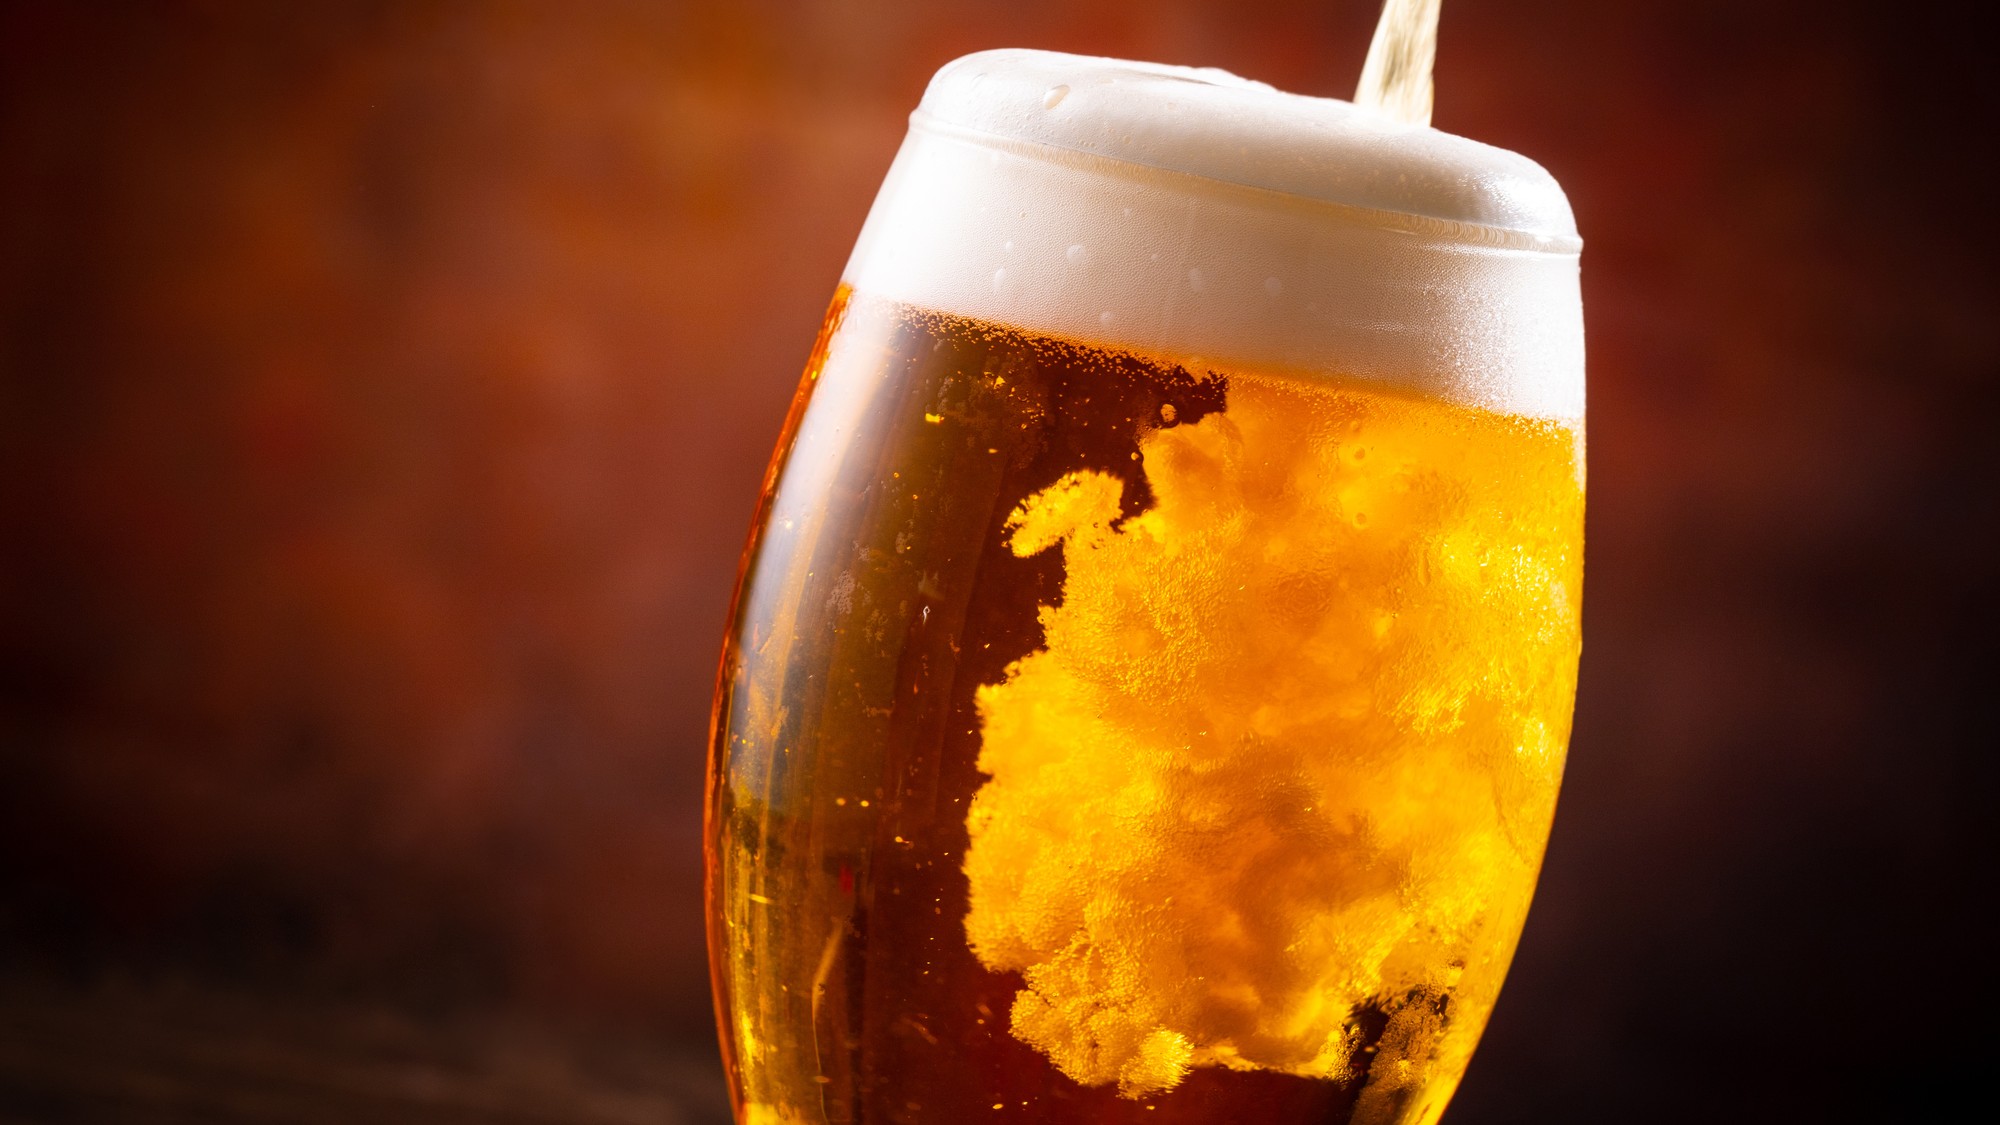 「大手ビール4社」の平均年収…「ビール会社は高給」噂の真相に迫る